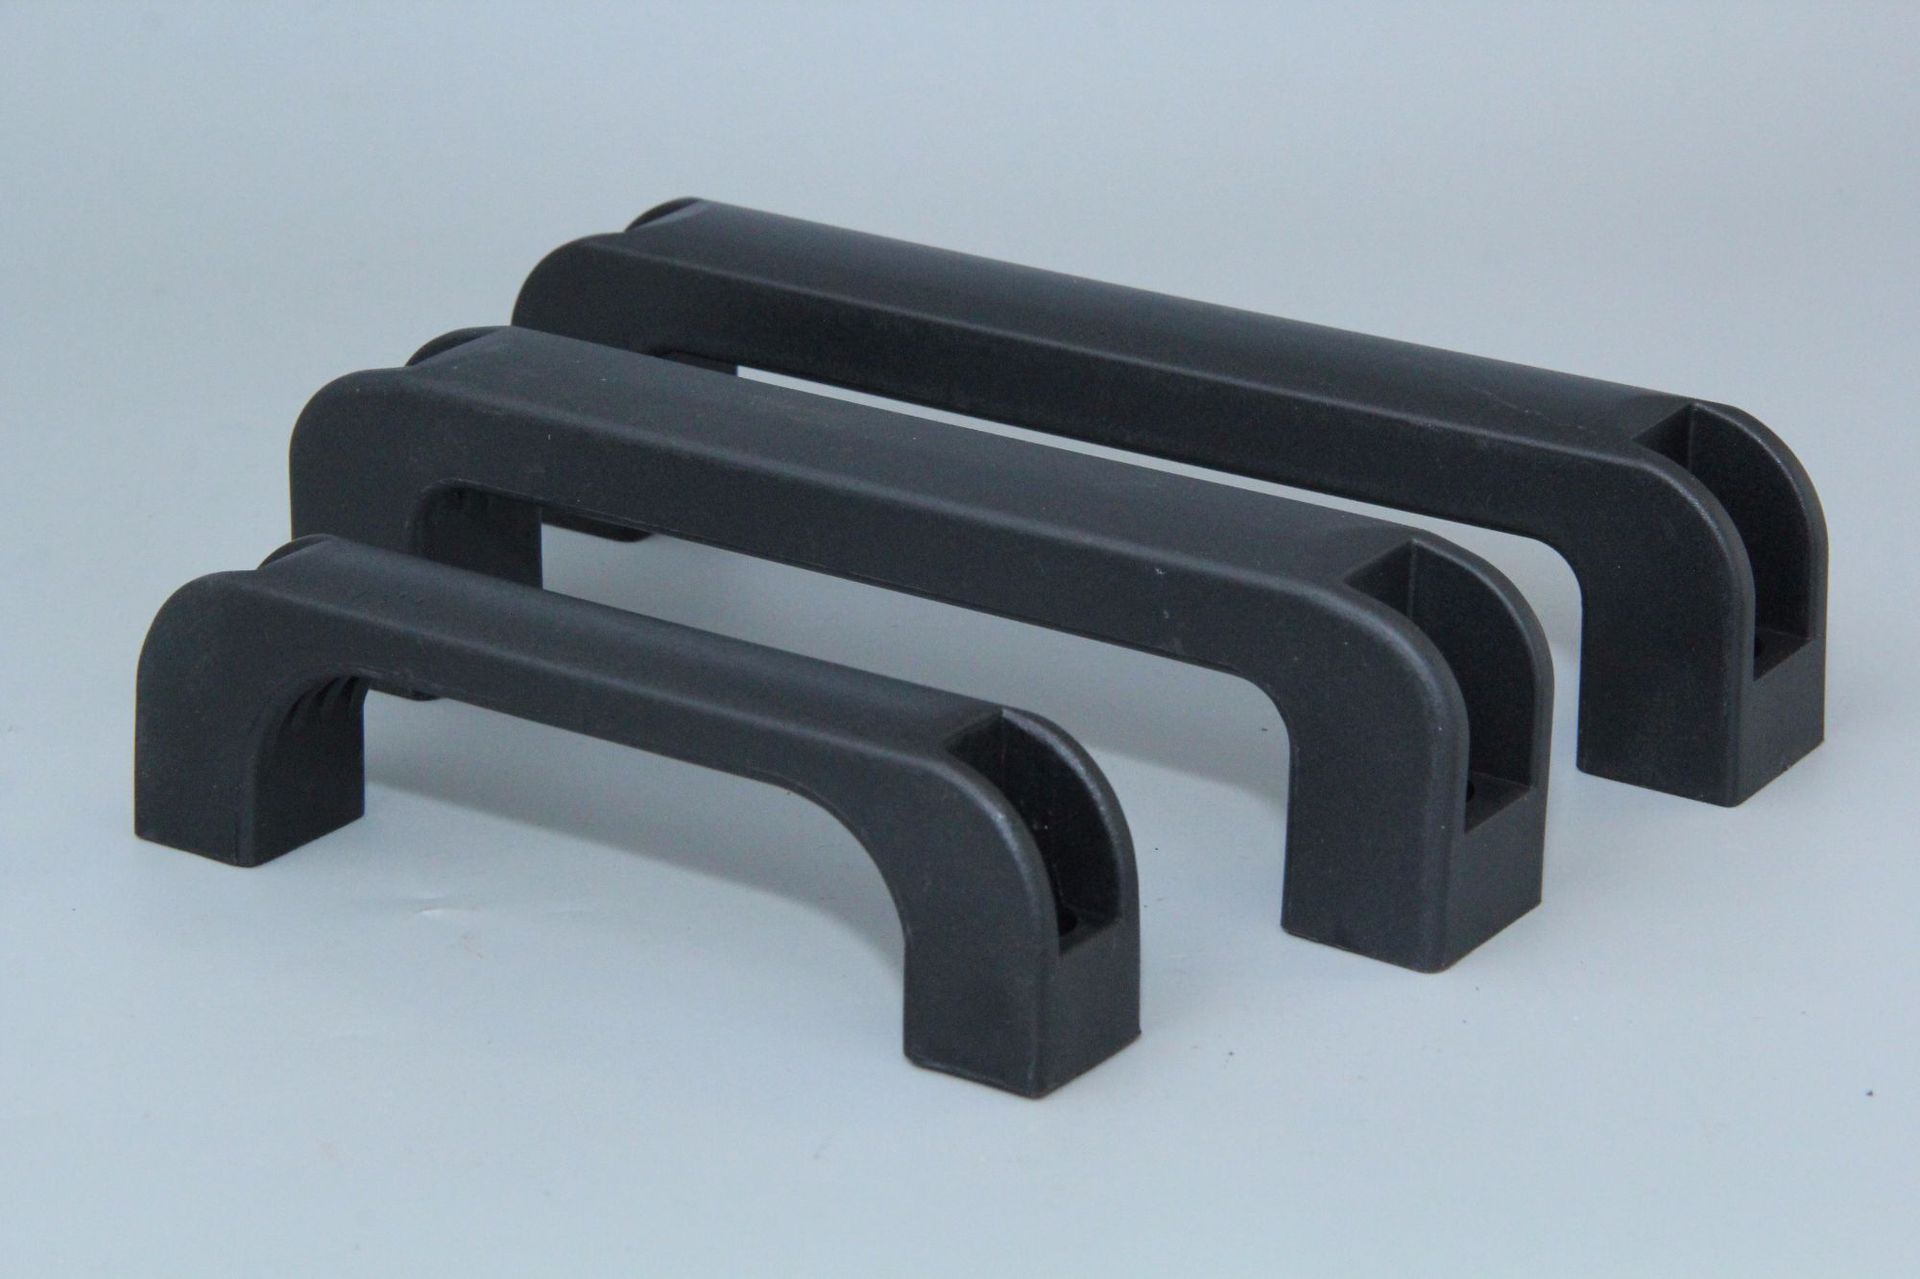 Nylon concealed industrial equipment door handle, an important part of industrial equipment